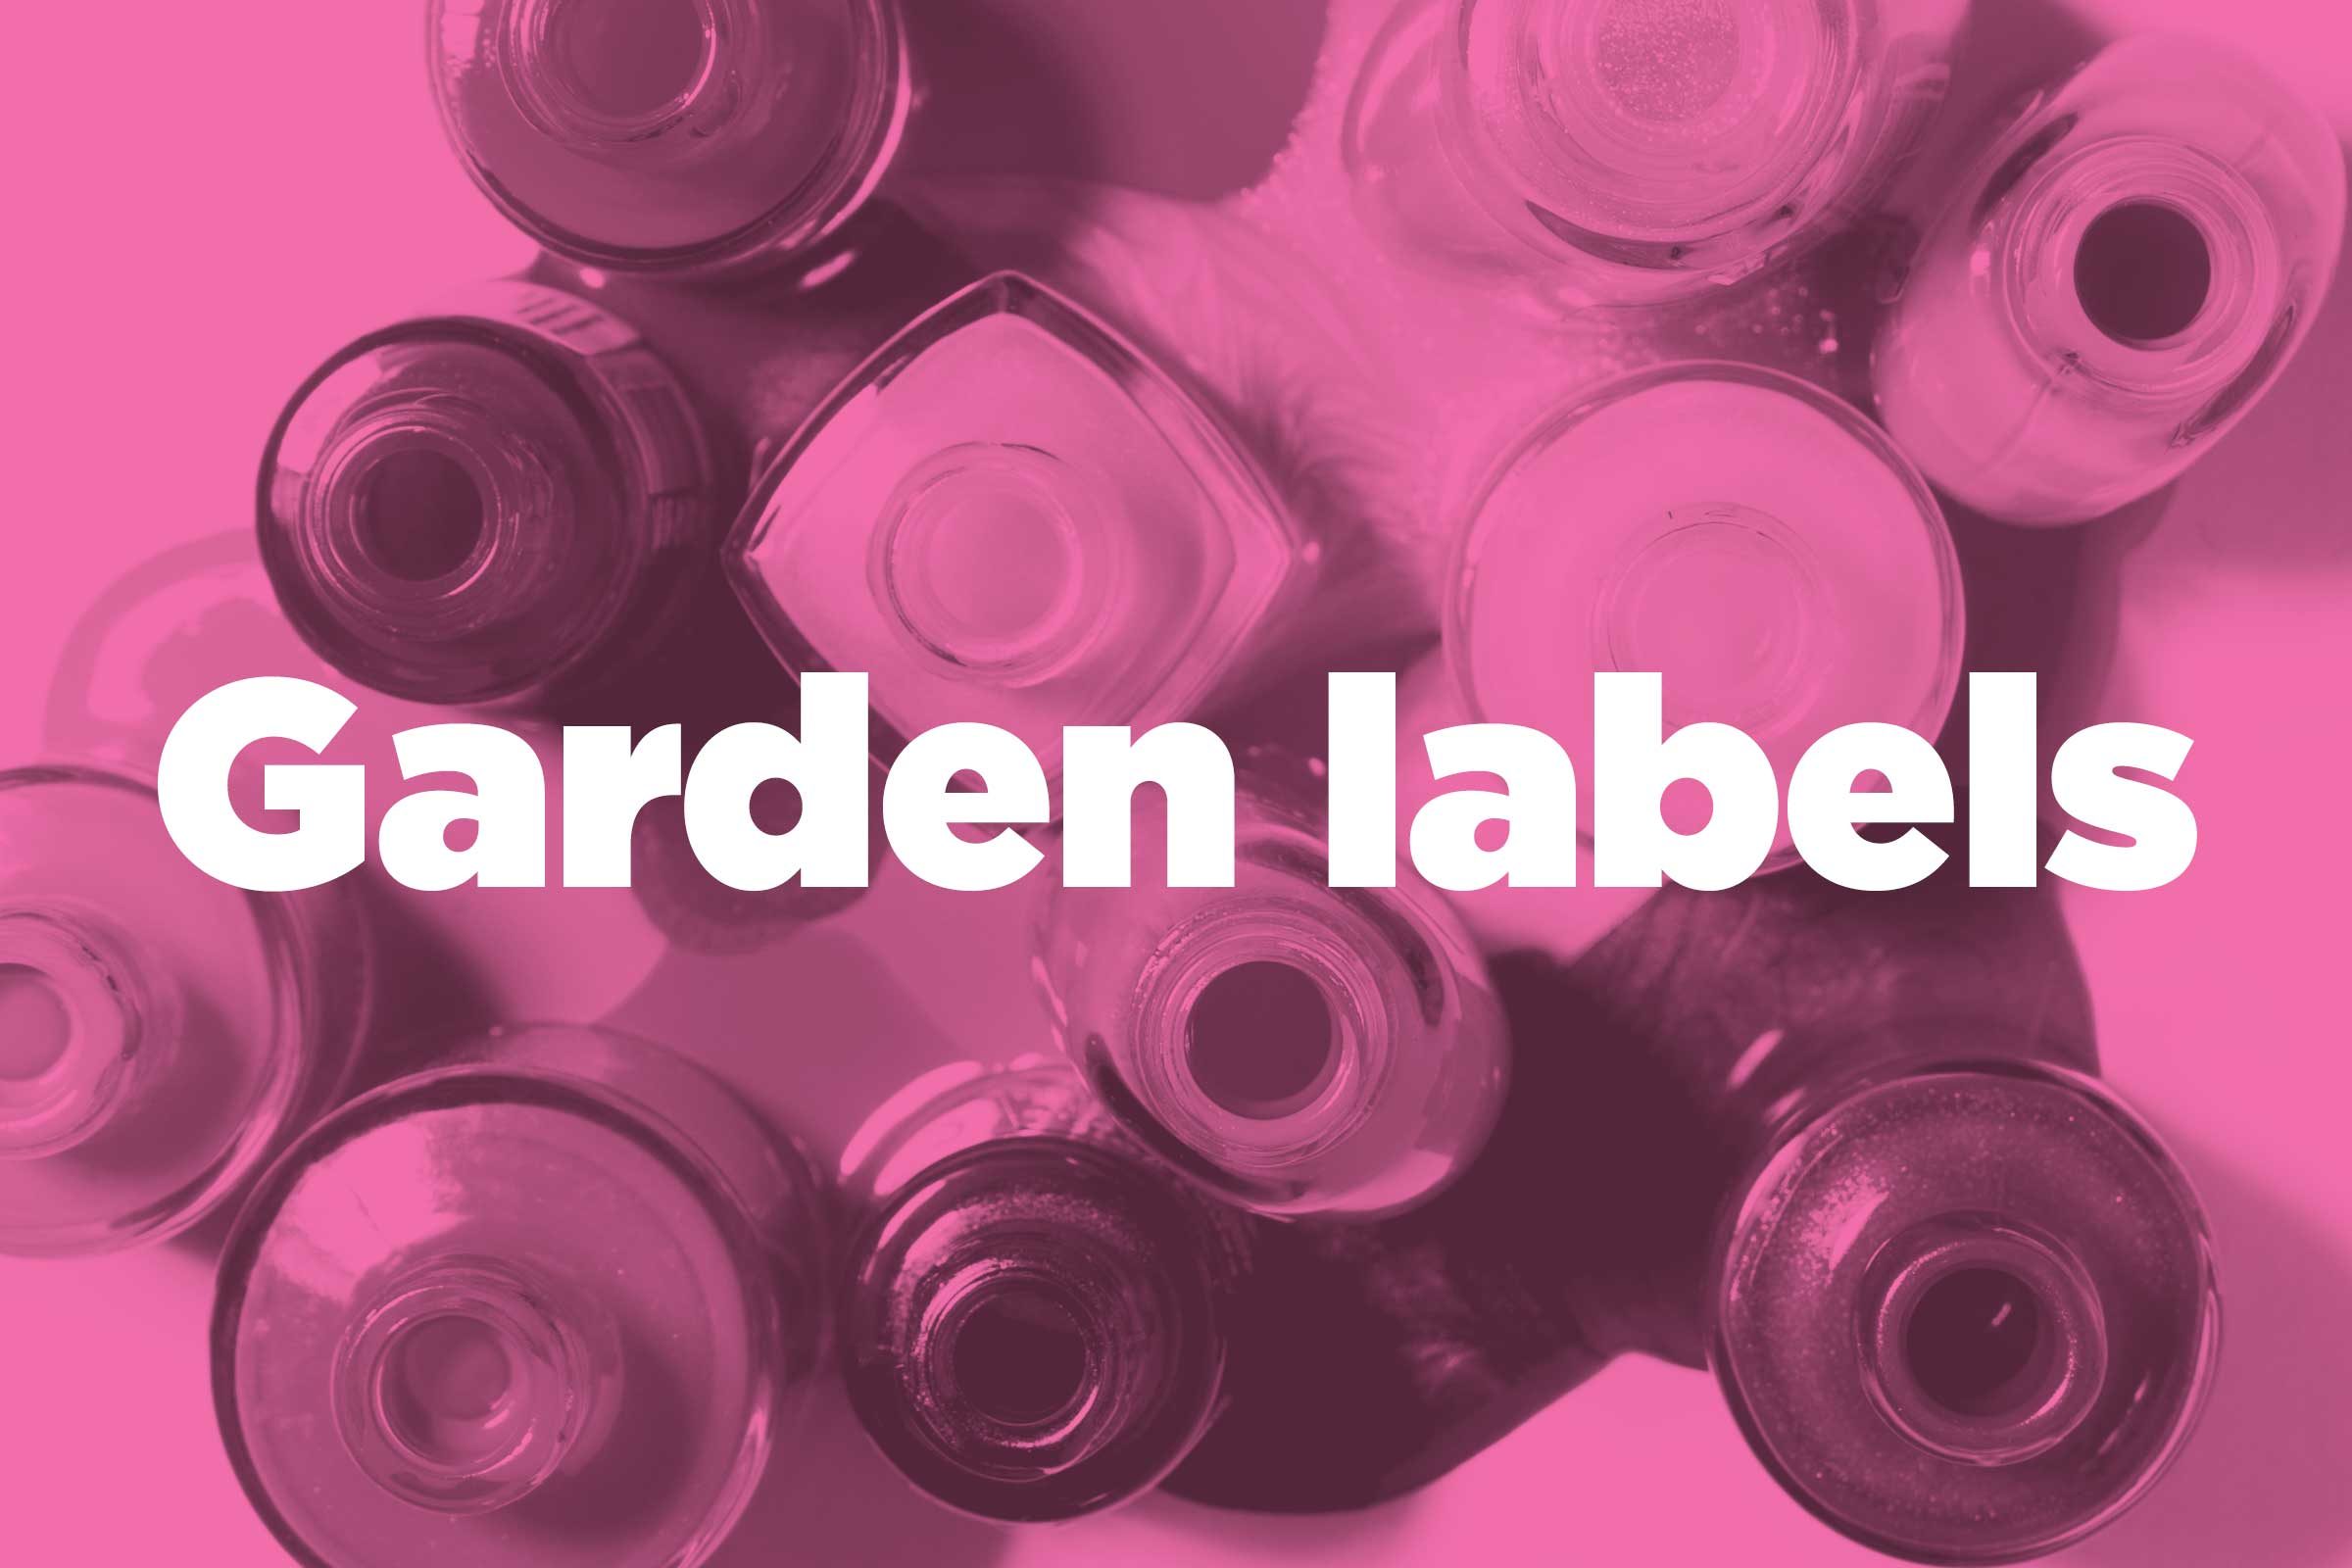 Waterproof your garden labels